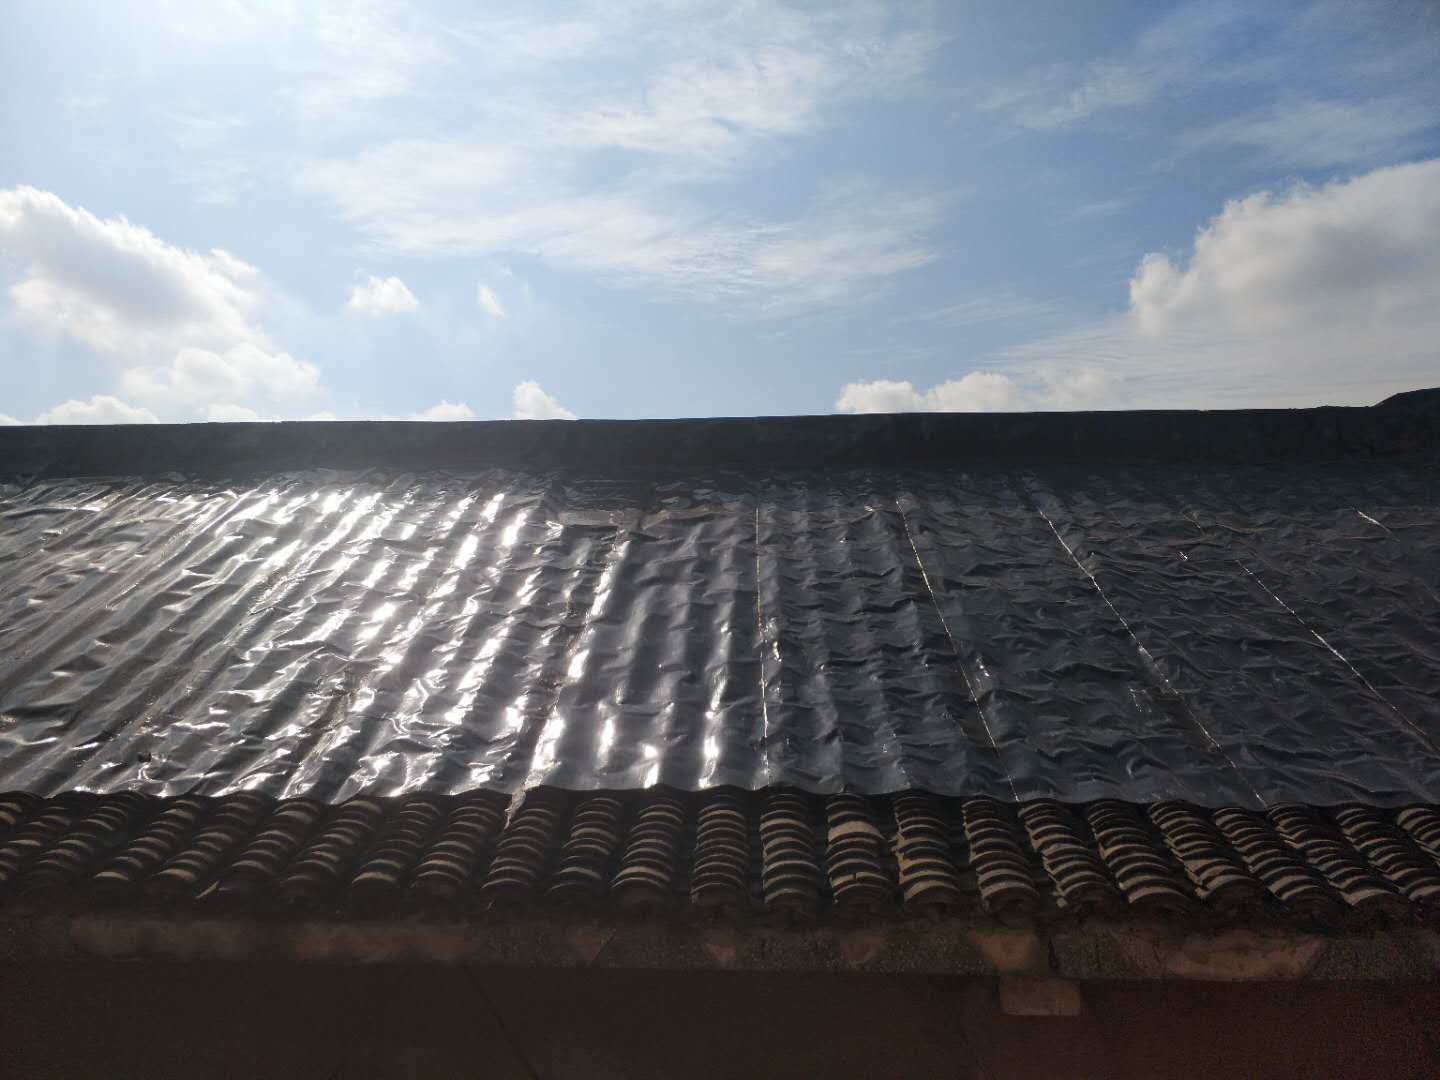 上海屋面防水